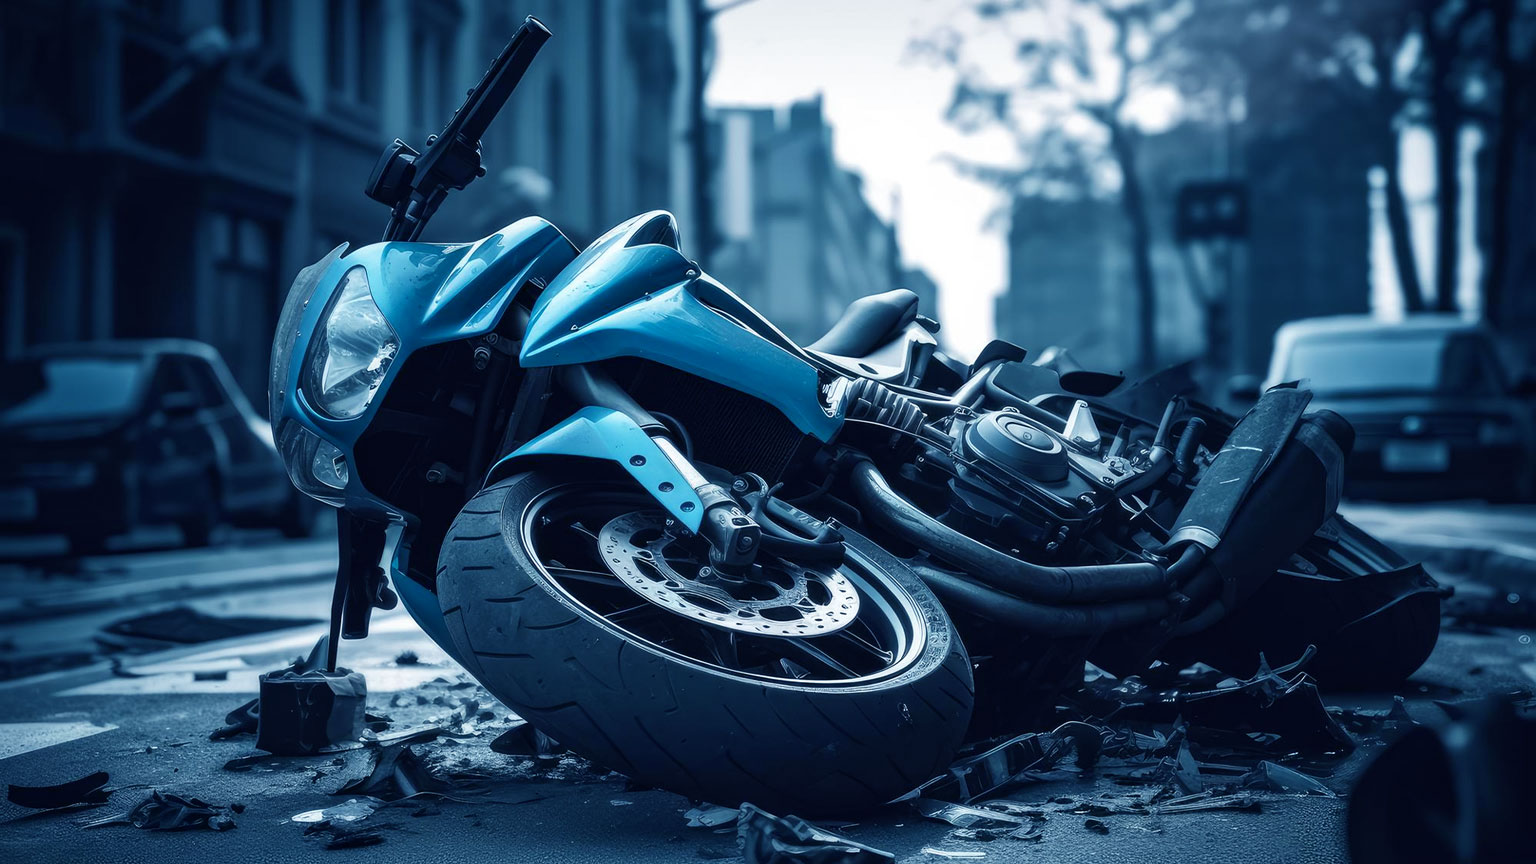 Spezialisierte Motorrad-Unfallgutachten Köln - Verlassen Sie sich auf unsere Expertise für präzise Schadensbewertungen